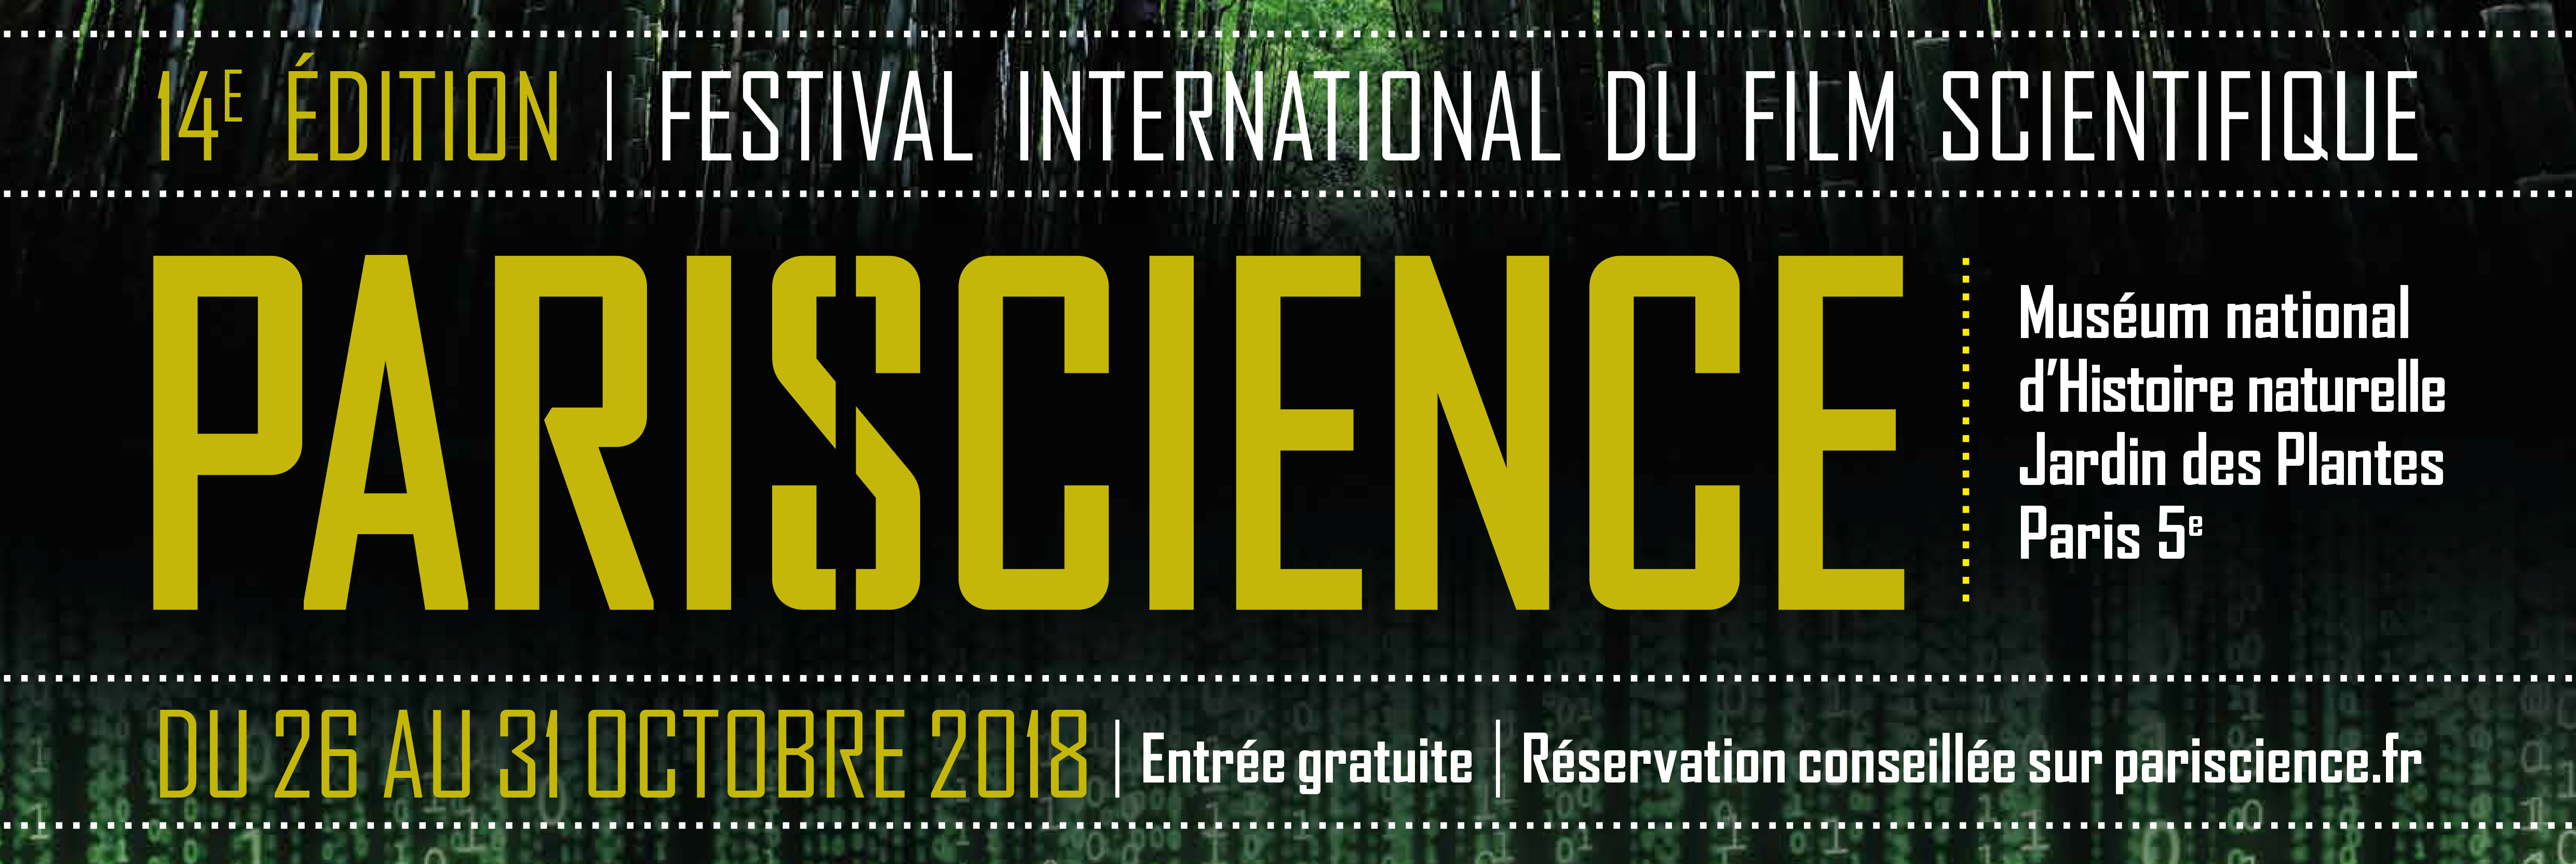 Pariscience 2018 : faire découvrir les meilleurs documentaires scientifiques récents